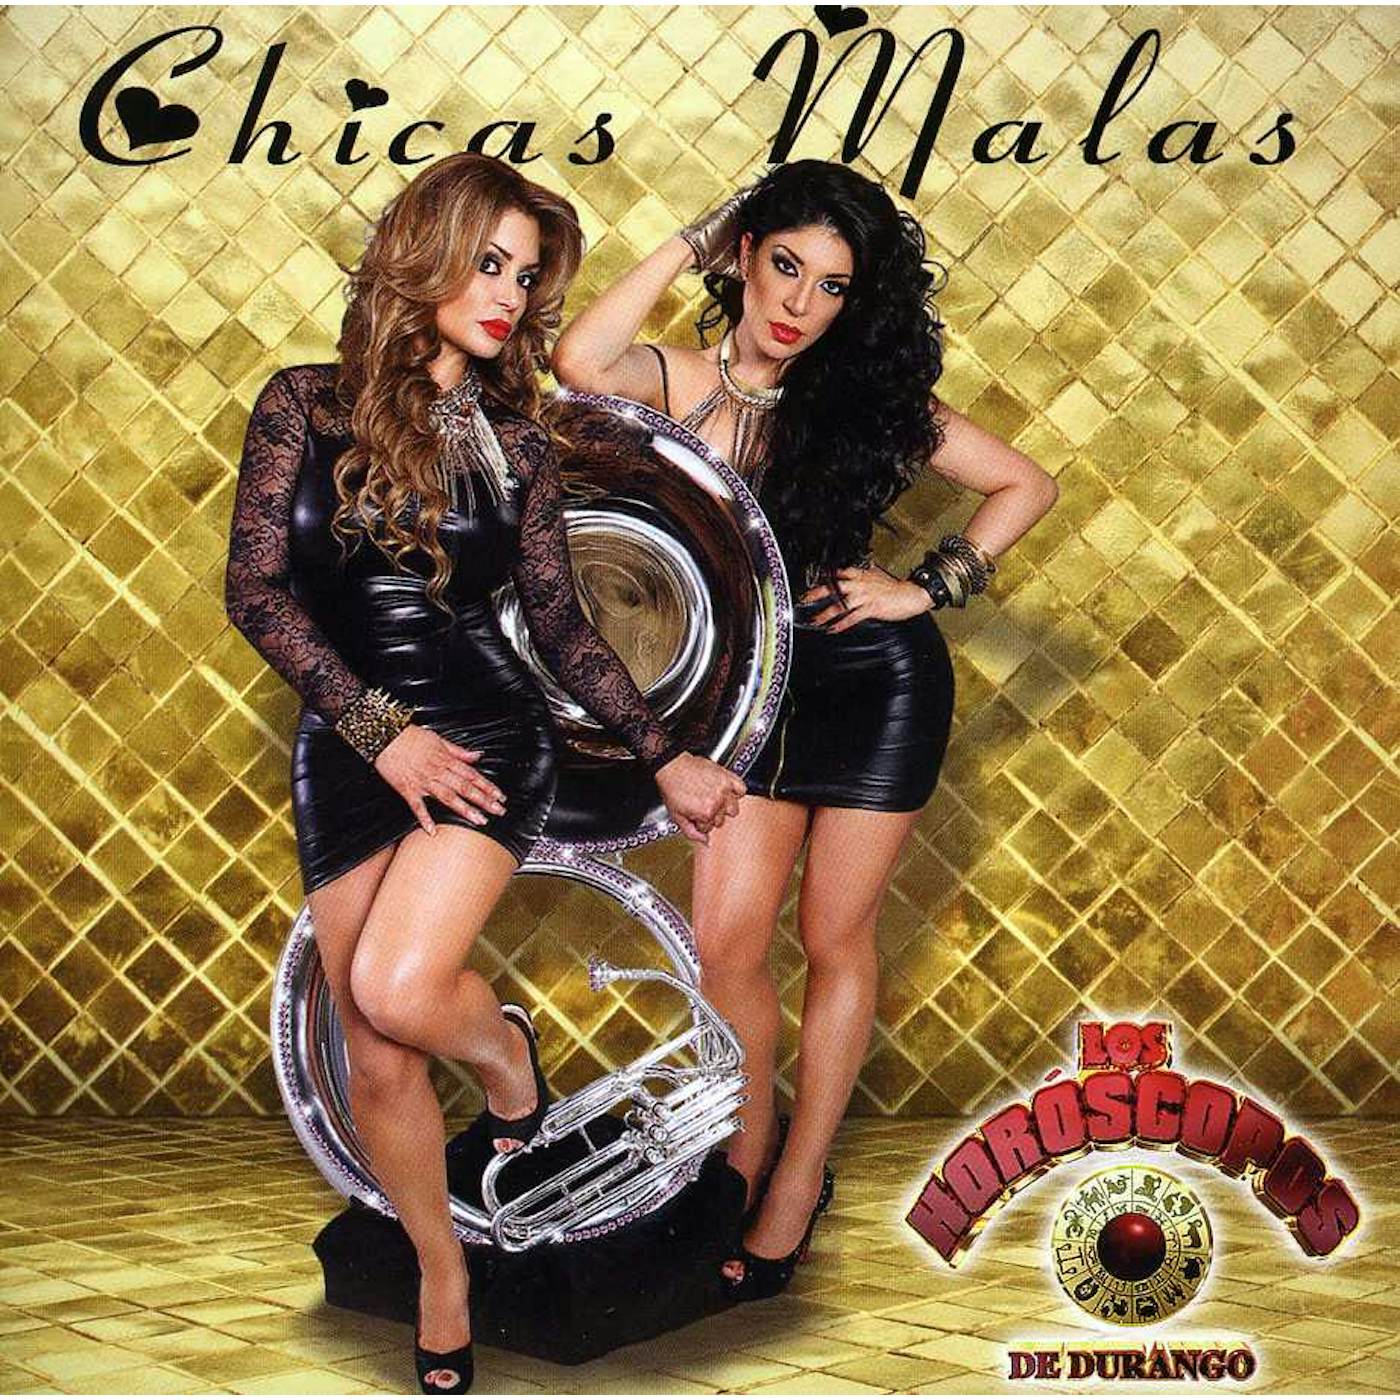 Horoscopos De Durango CHICAS MALAS CD